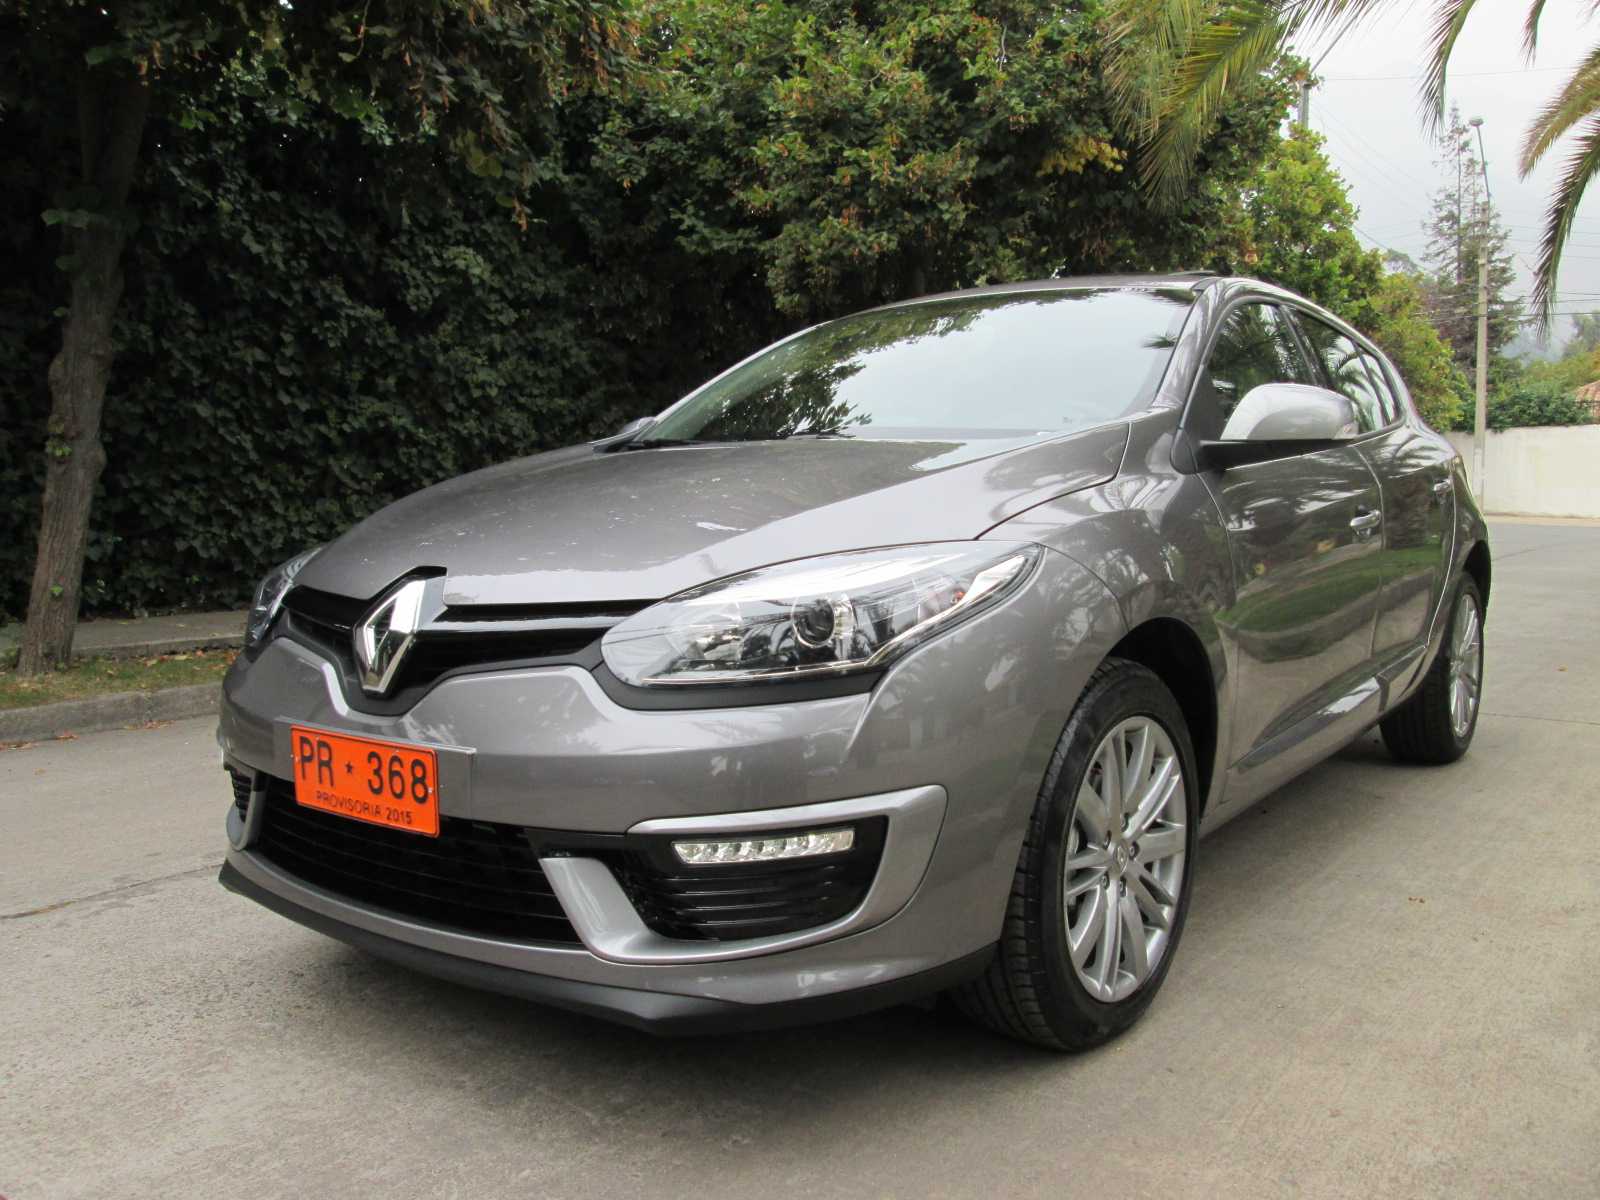 Nuevo Renault Megane III 2015 inicia venta en Chile